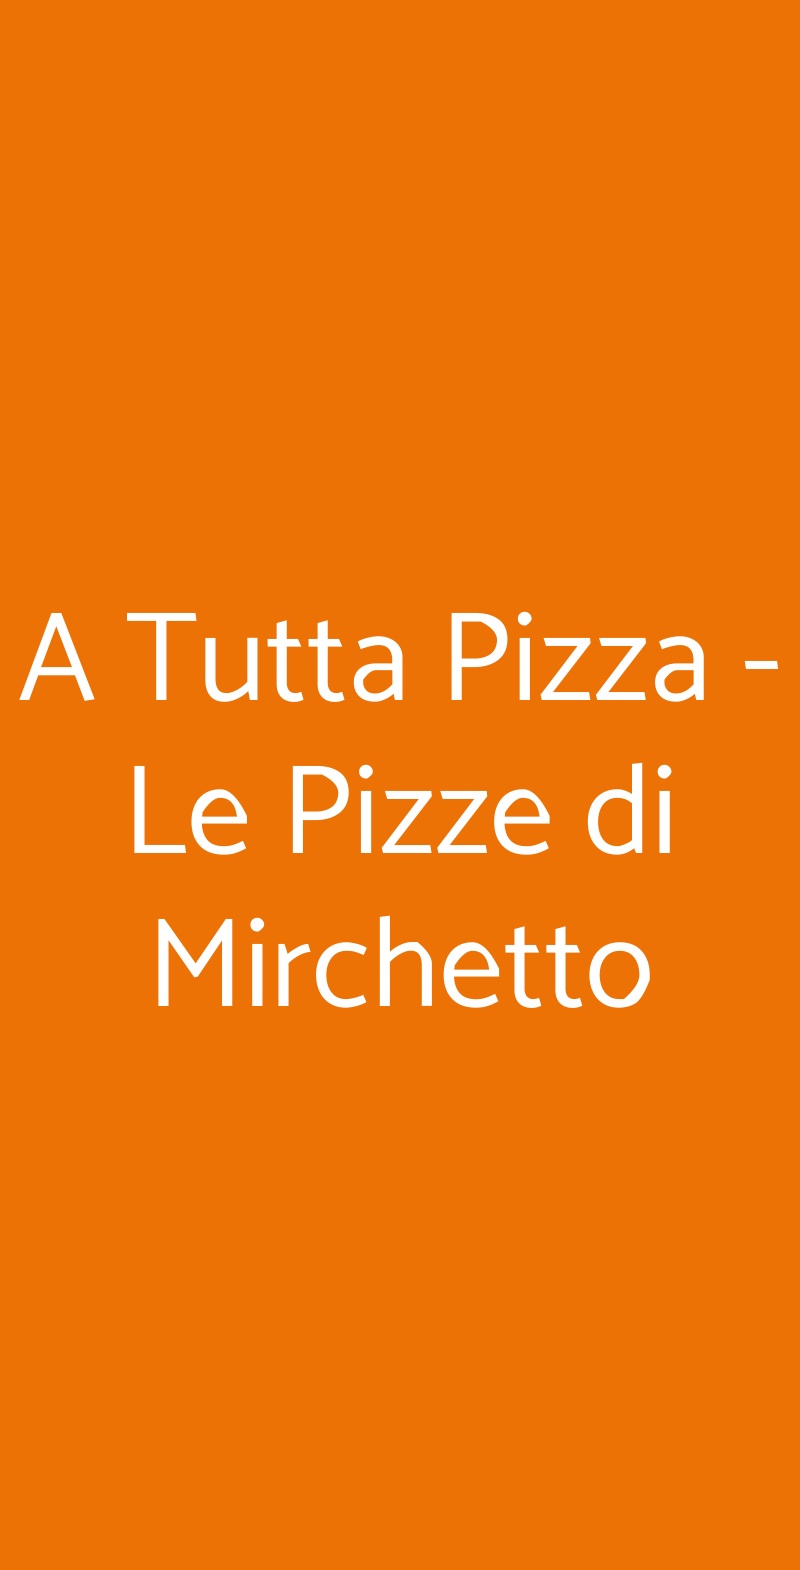 A Tutta Pizza - Le Pizze di Mirchetto Roma menù 1 pagina